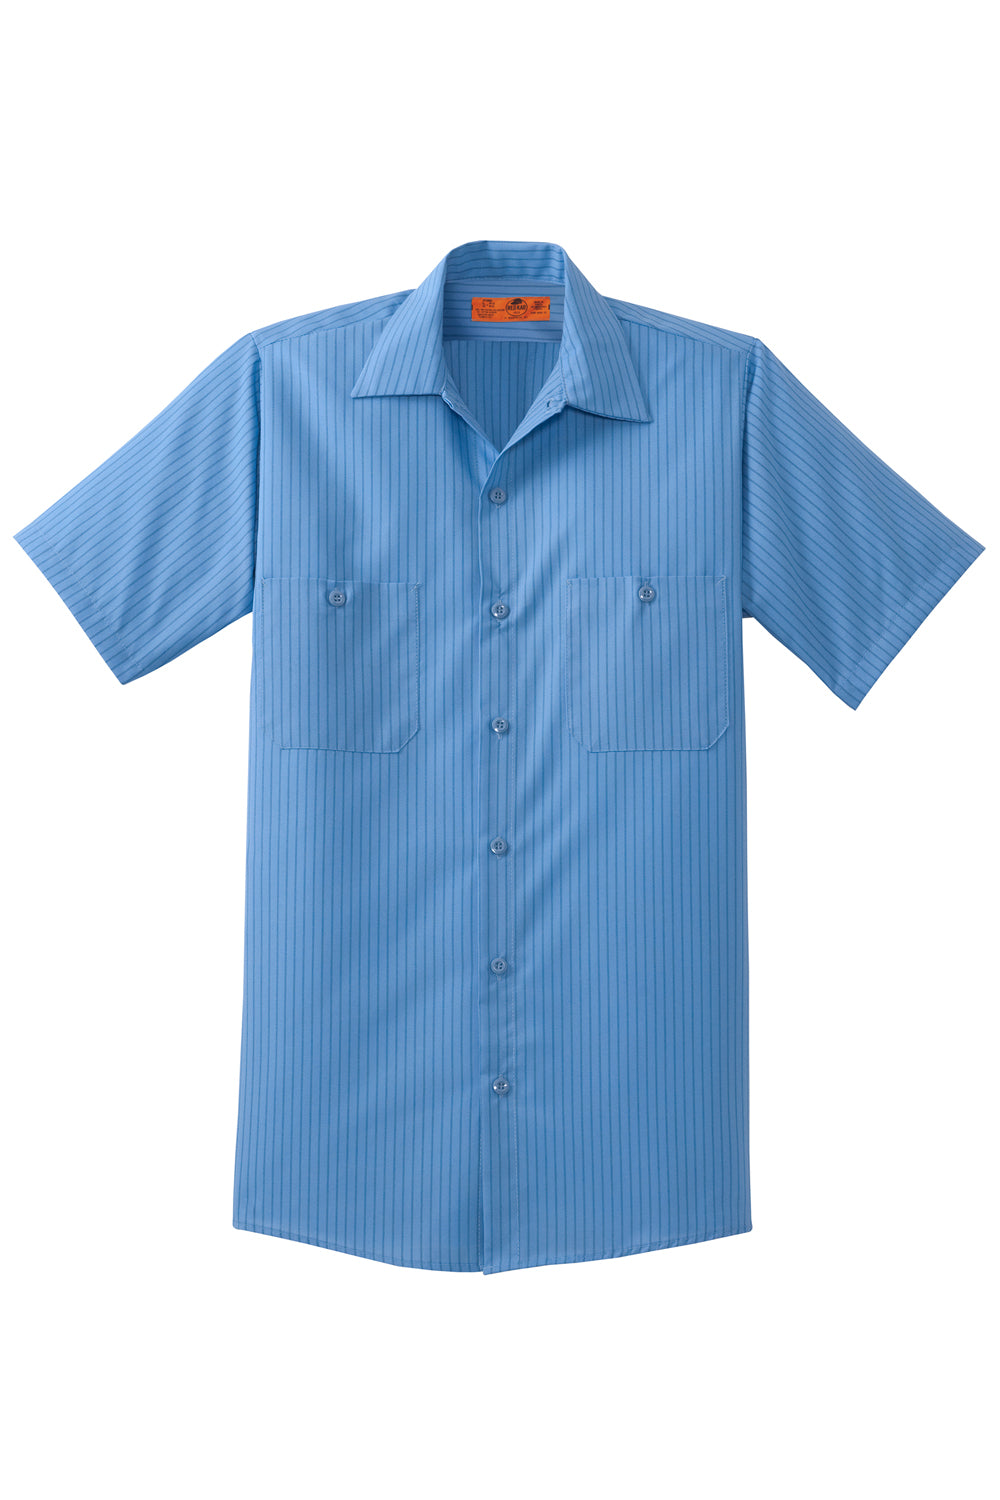 Red Kap CS20/CS20LONG Mens Industrial Moisture Wicking Short Sleeve Button Down Shirt w/ Double Pockets Petrol Blue/Navy Blue Flat Front